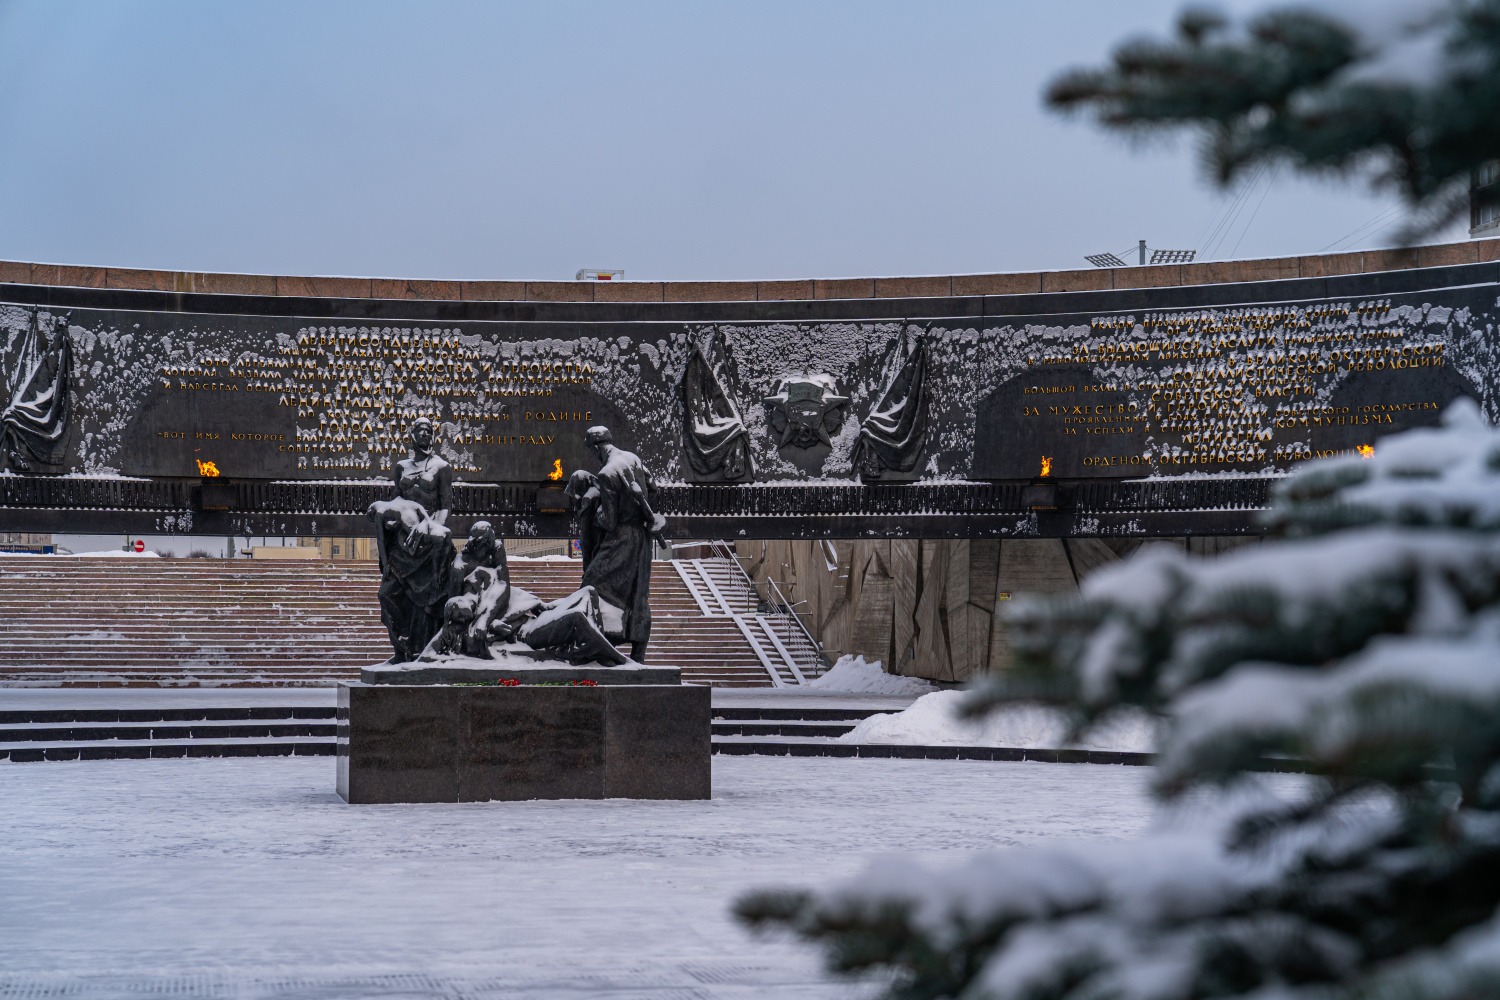 23 февраля в Санкт-Петербурге ряд музеев с военно-историческими экспозициями можно посетить бесплатно